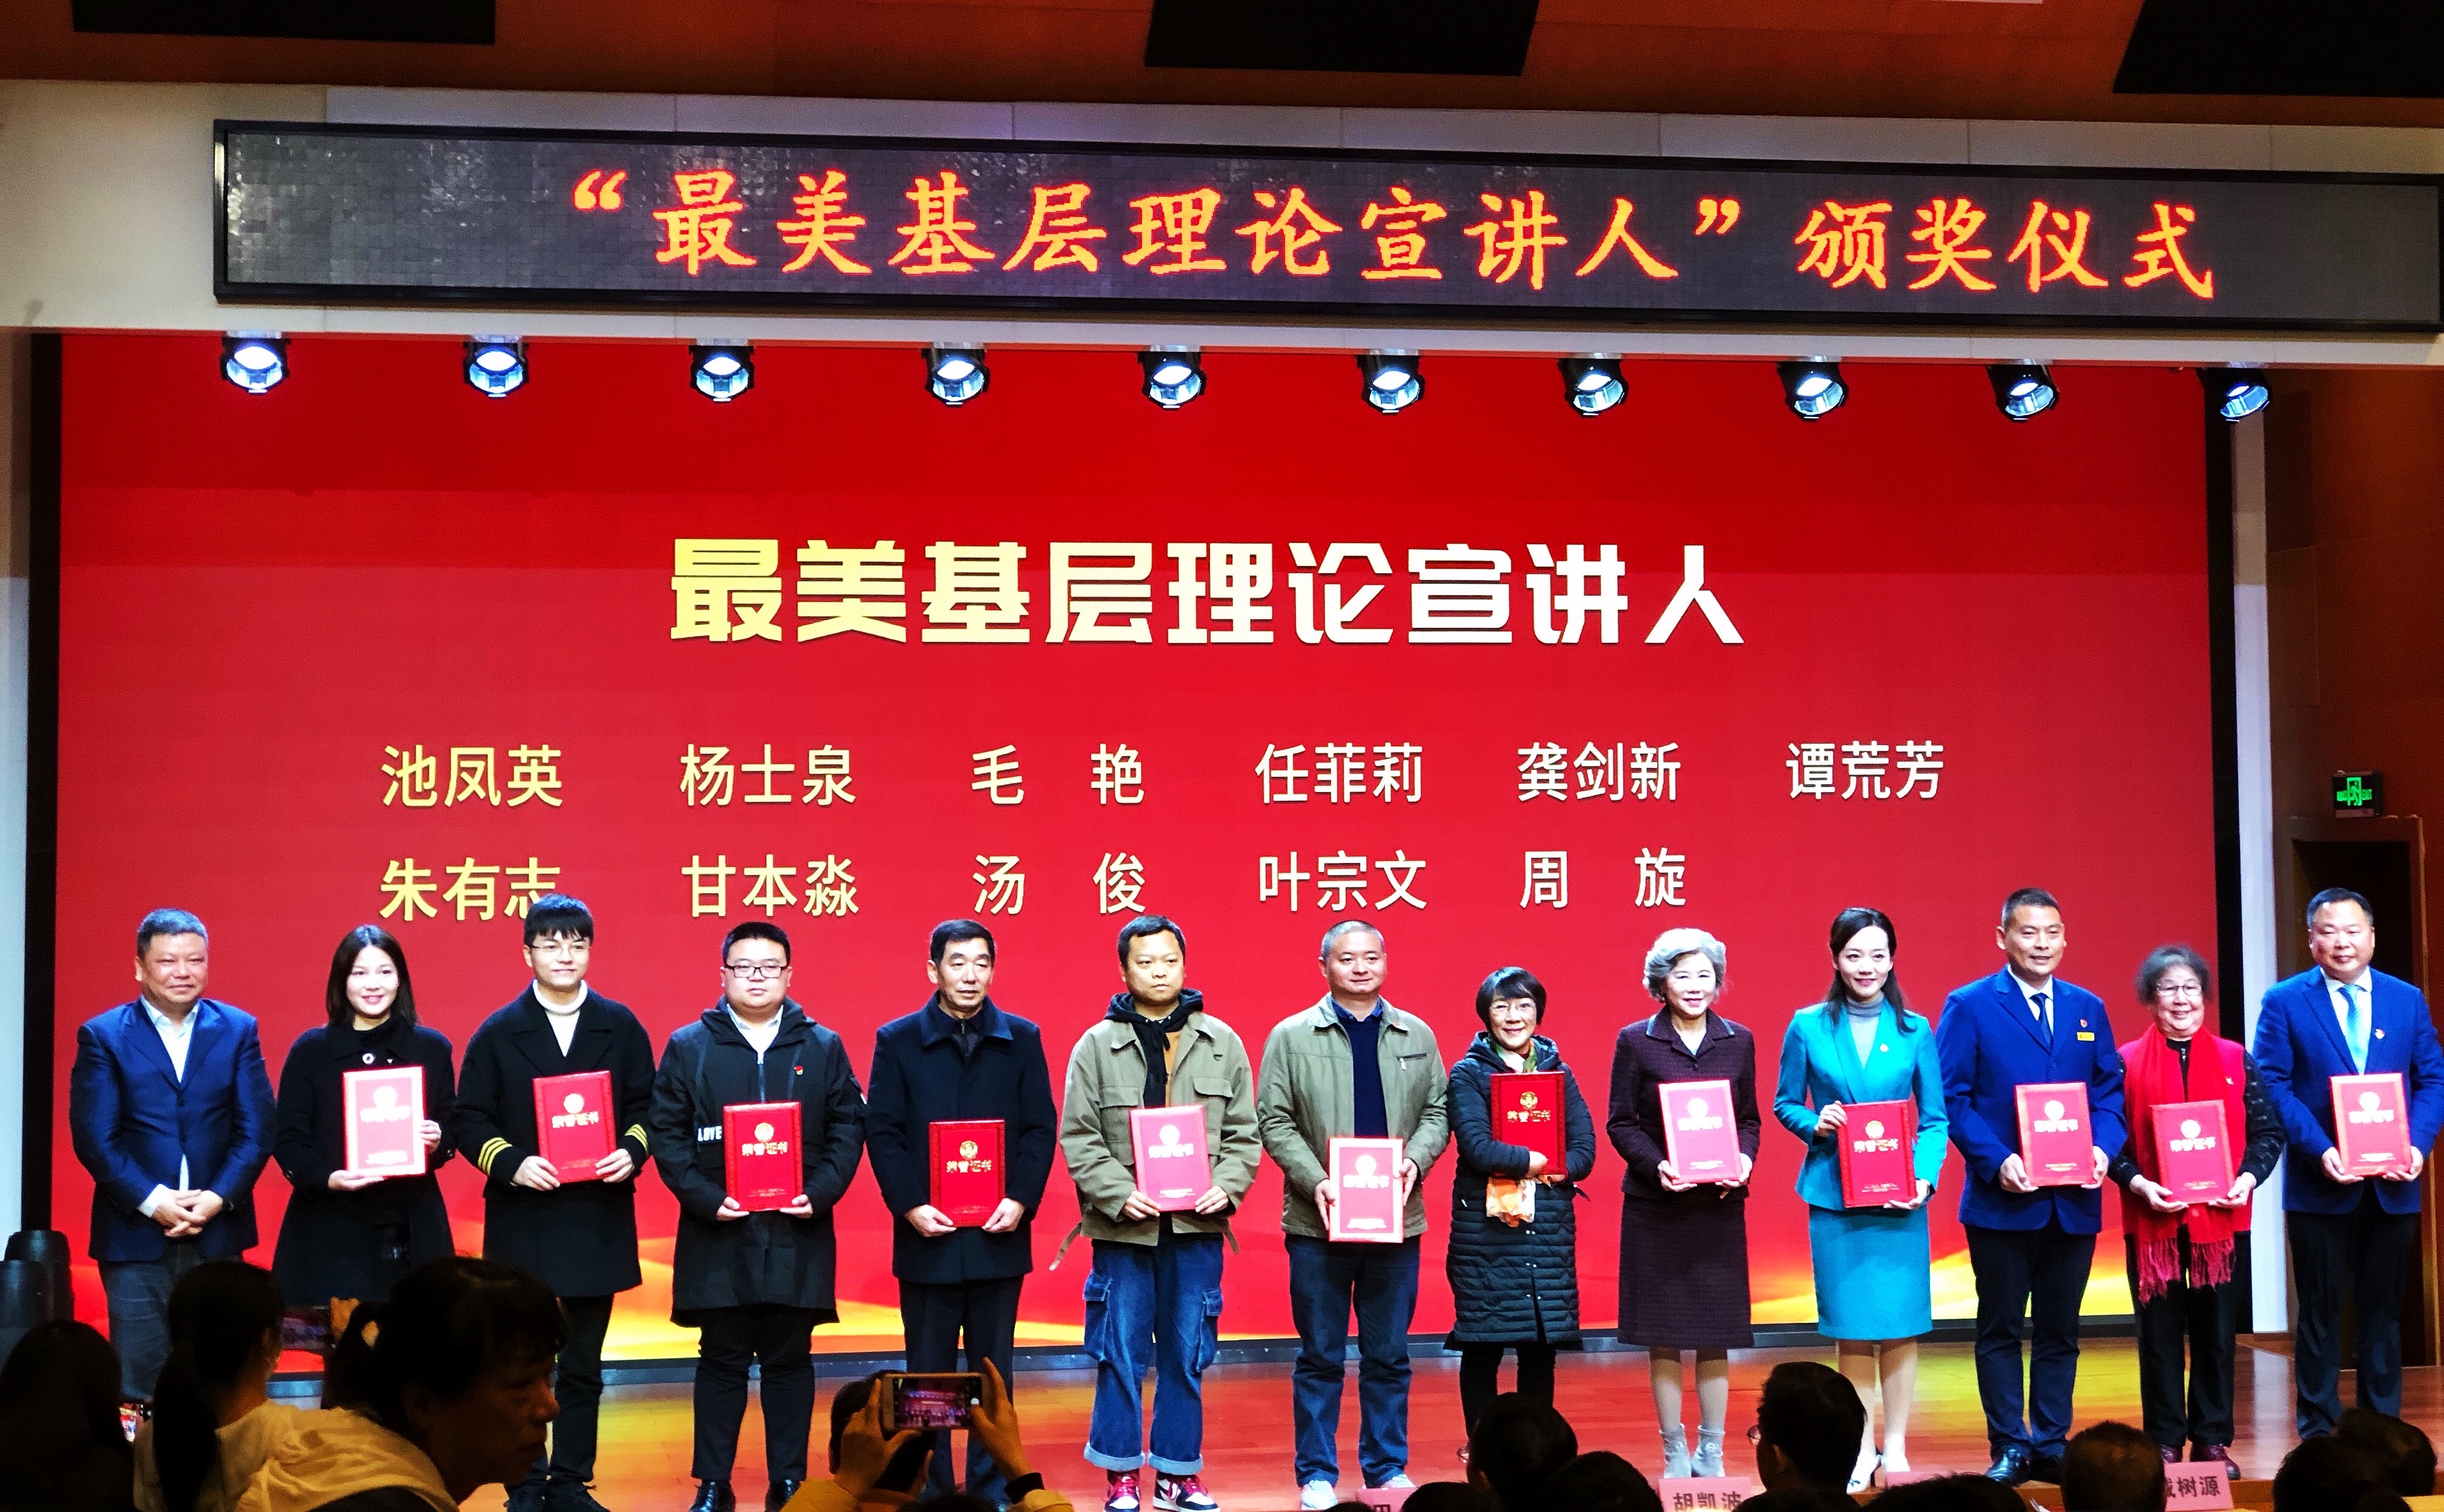 彭友良获得总决赛一等奖，池凤英、任菲莉、杨士泉等人获得“最美基层理论宣讲人”荣誉称号。